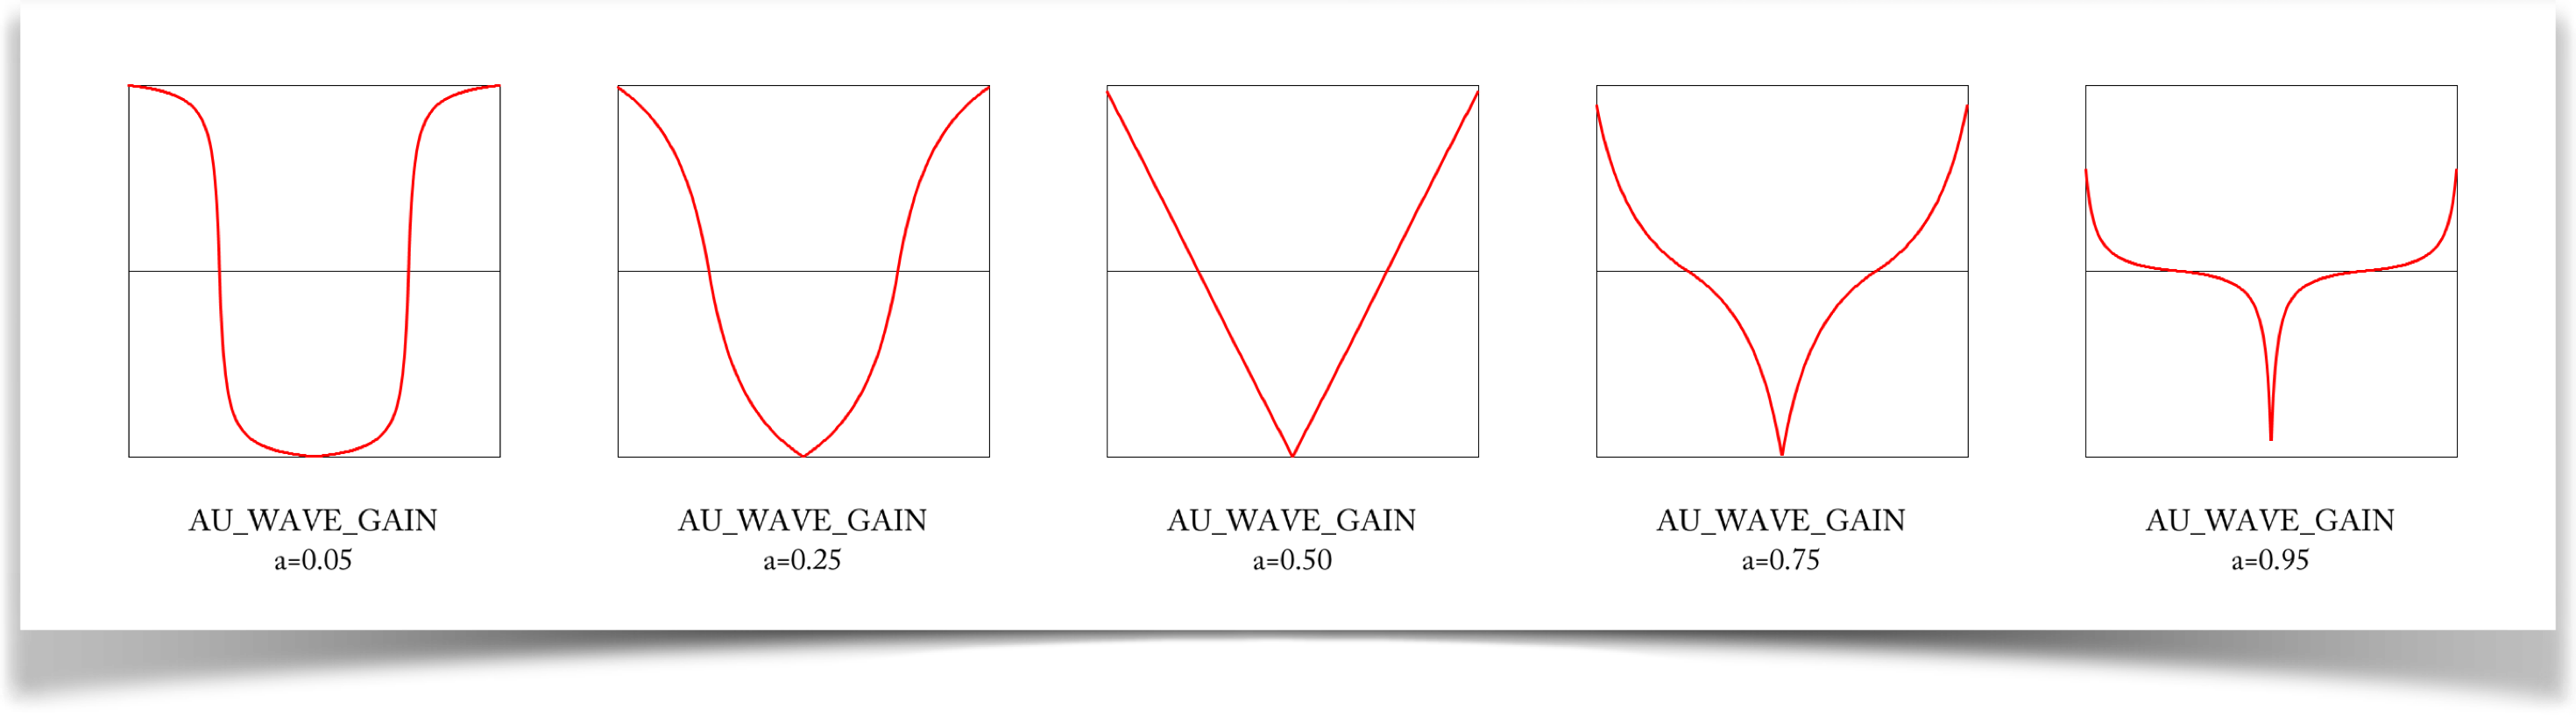 The symmetric gain wave